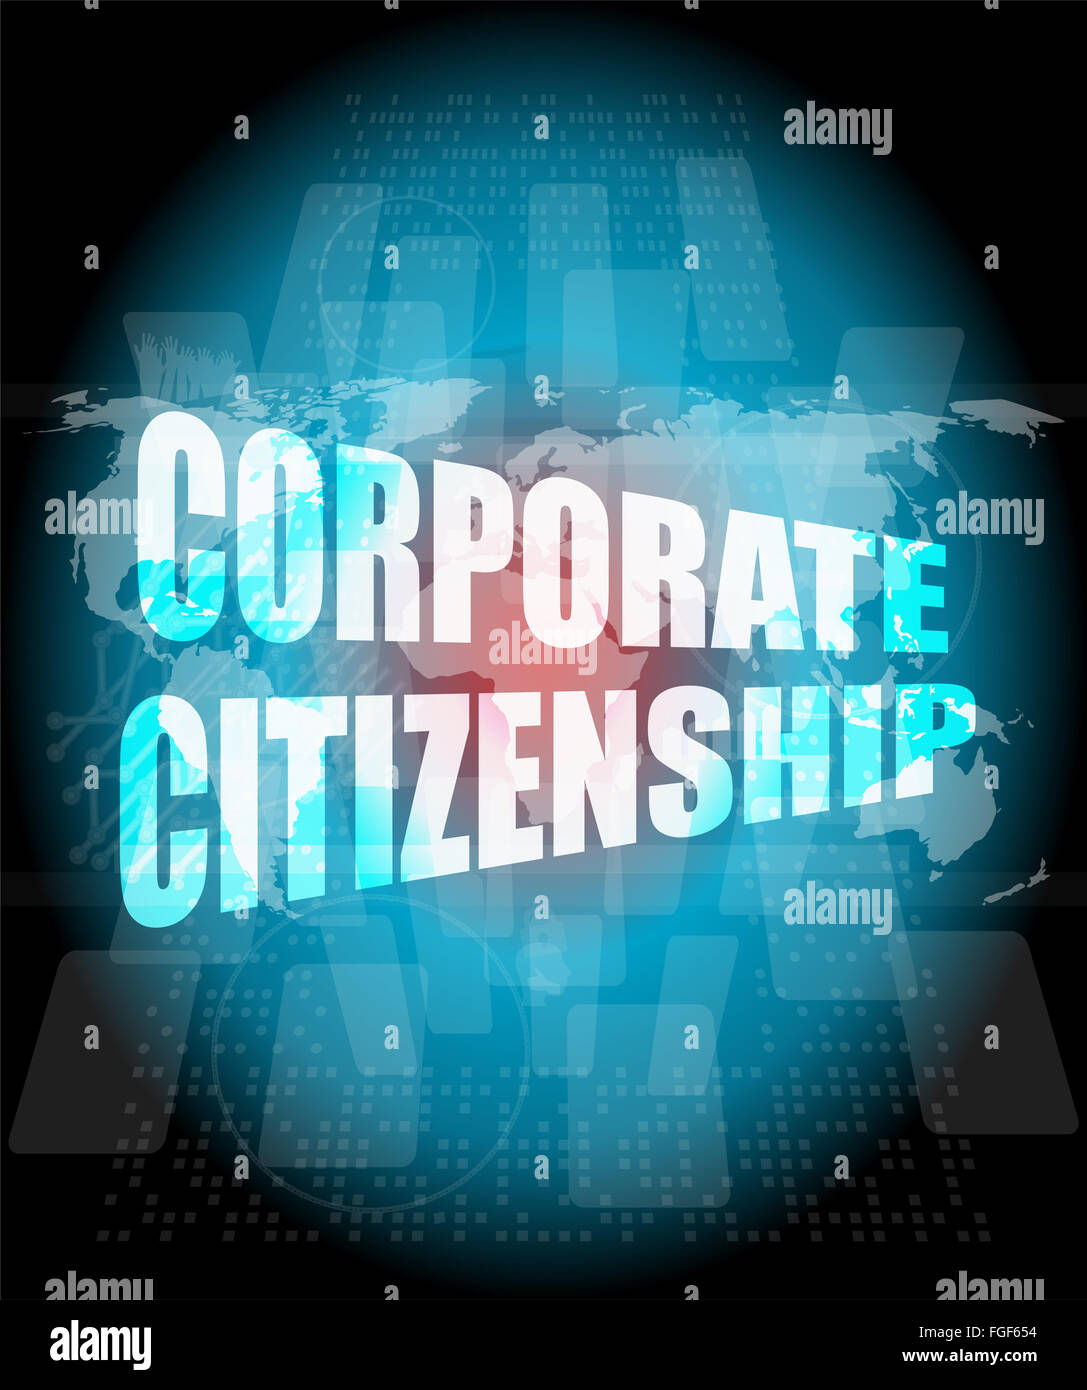 Corporate-Citizenship-Wörter auf dem digitalen Bildschirm mit Weltkarte Stockfoto